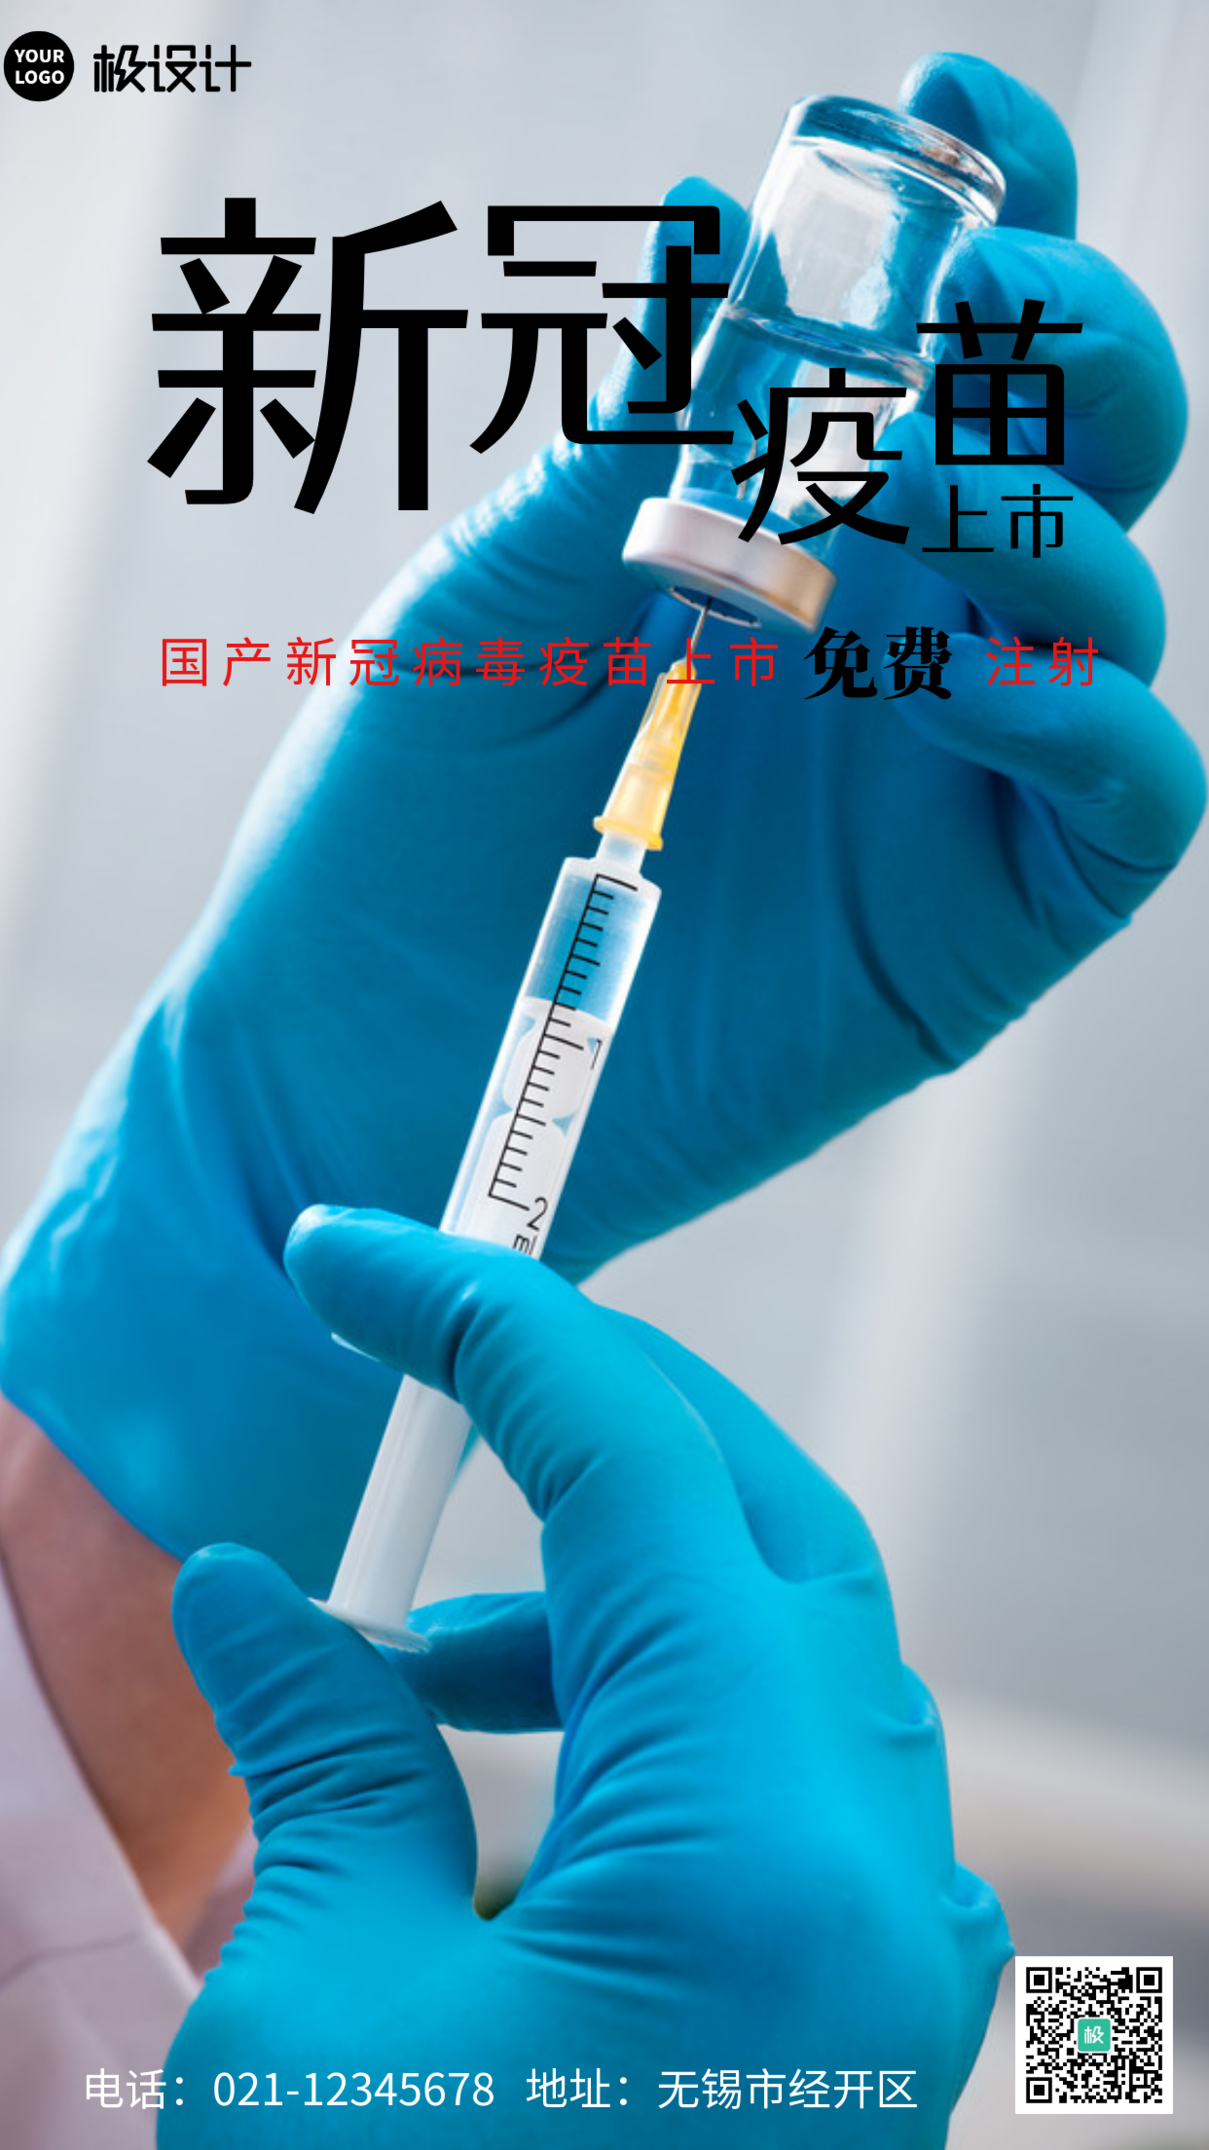 国产新冠病毒疫苗上市浅色简约医疗手机海报